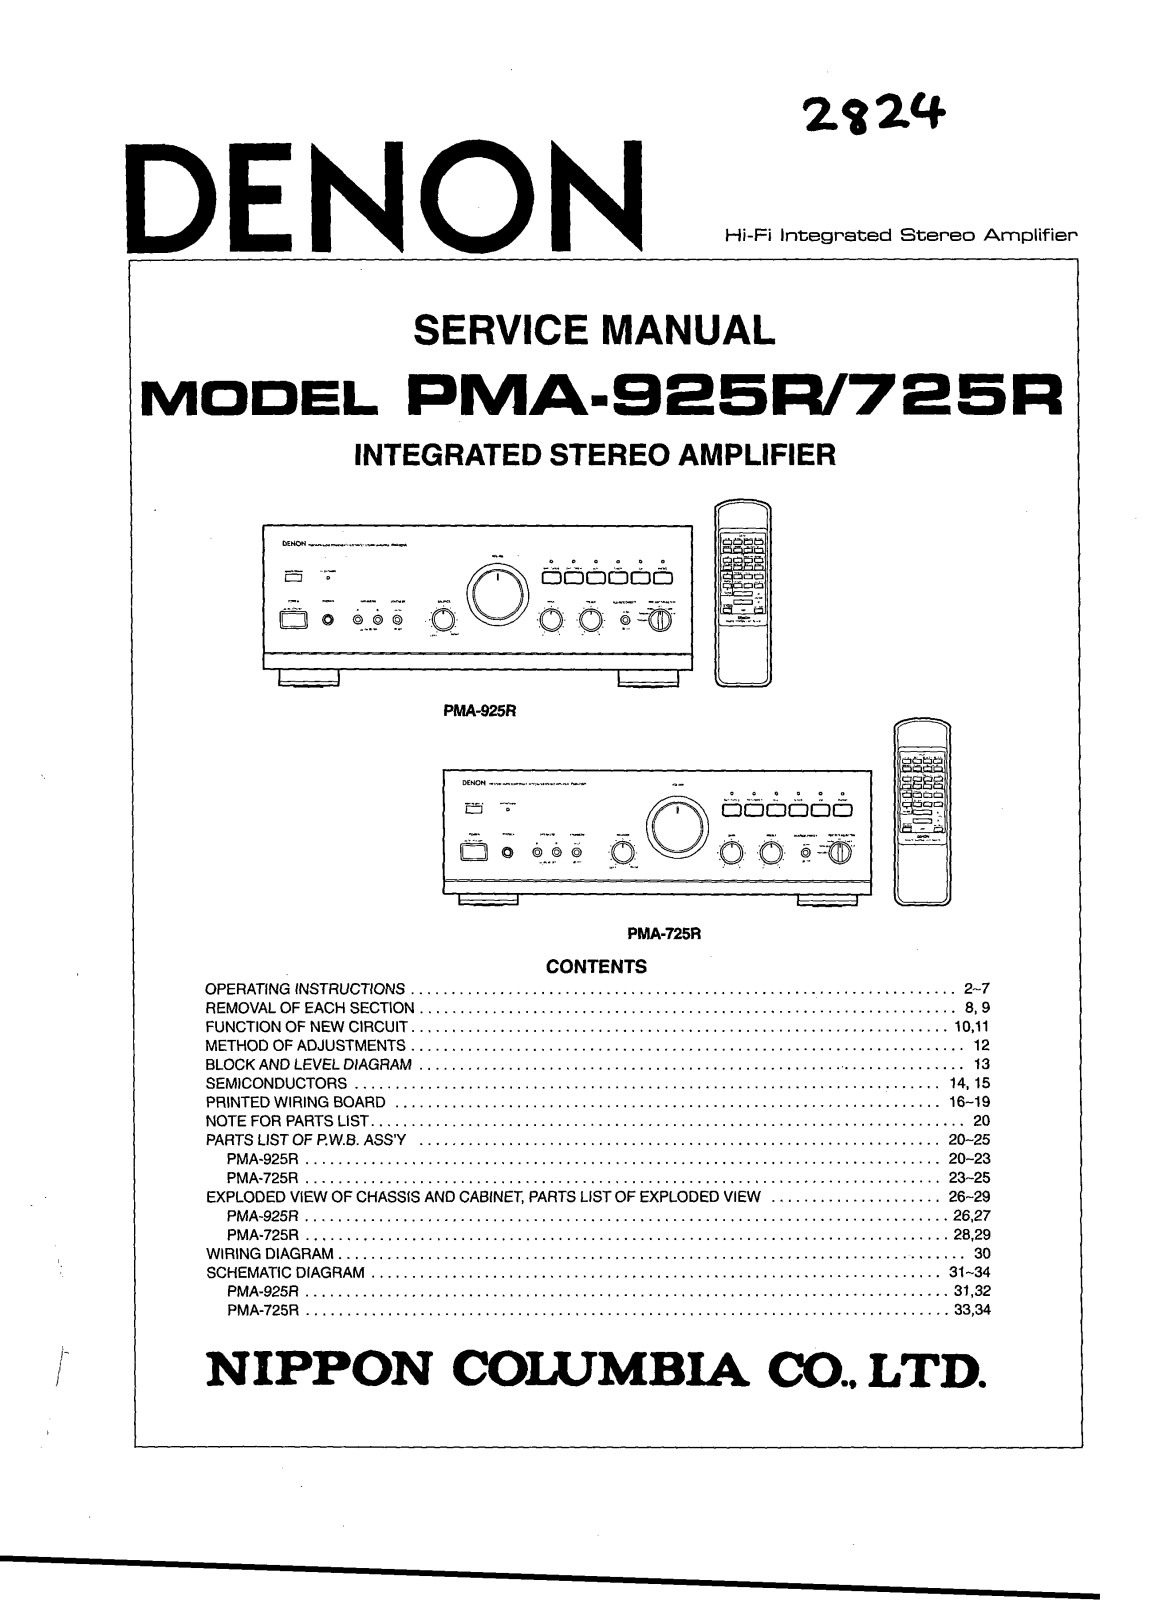 Denon PMA-725R Service Manual